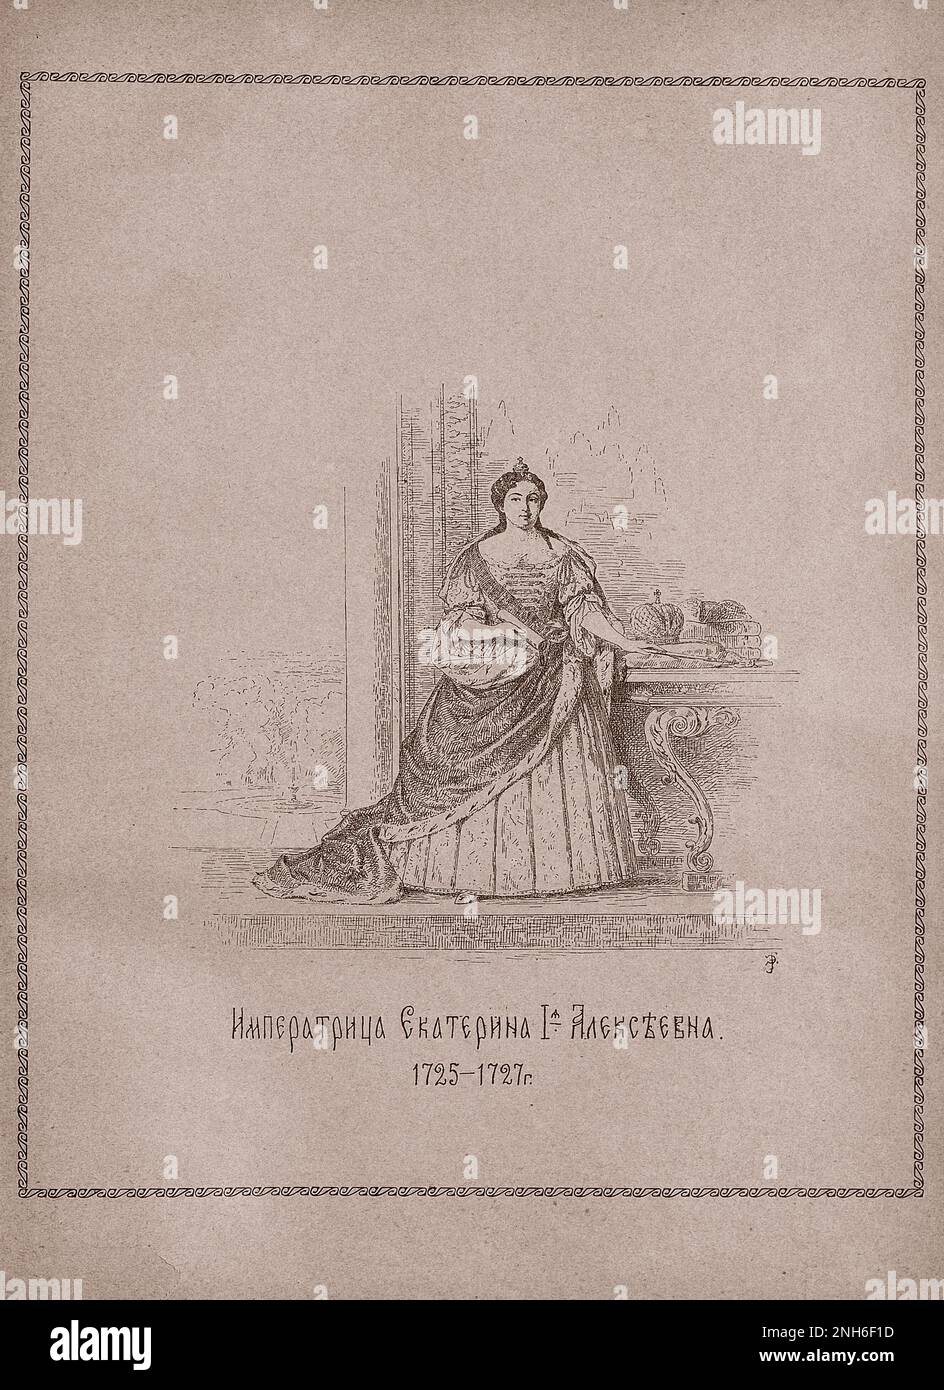 Incisione di Caterina i di Russia. 1913 Caterina i Alekseevna Mikhailova (Marta Helena Skowrońska, 1684 – 1727) è stata la seconda moglie e imperatrice consorte di Pietro il Grande e imperatrice Regnante di Russia dal 1725 fino alla sua morte nel 1727. Foto Stock